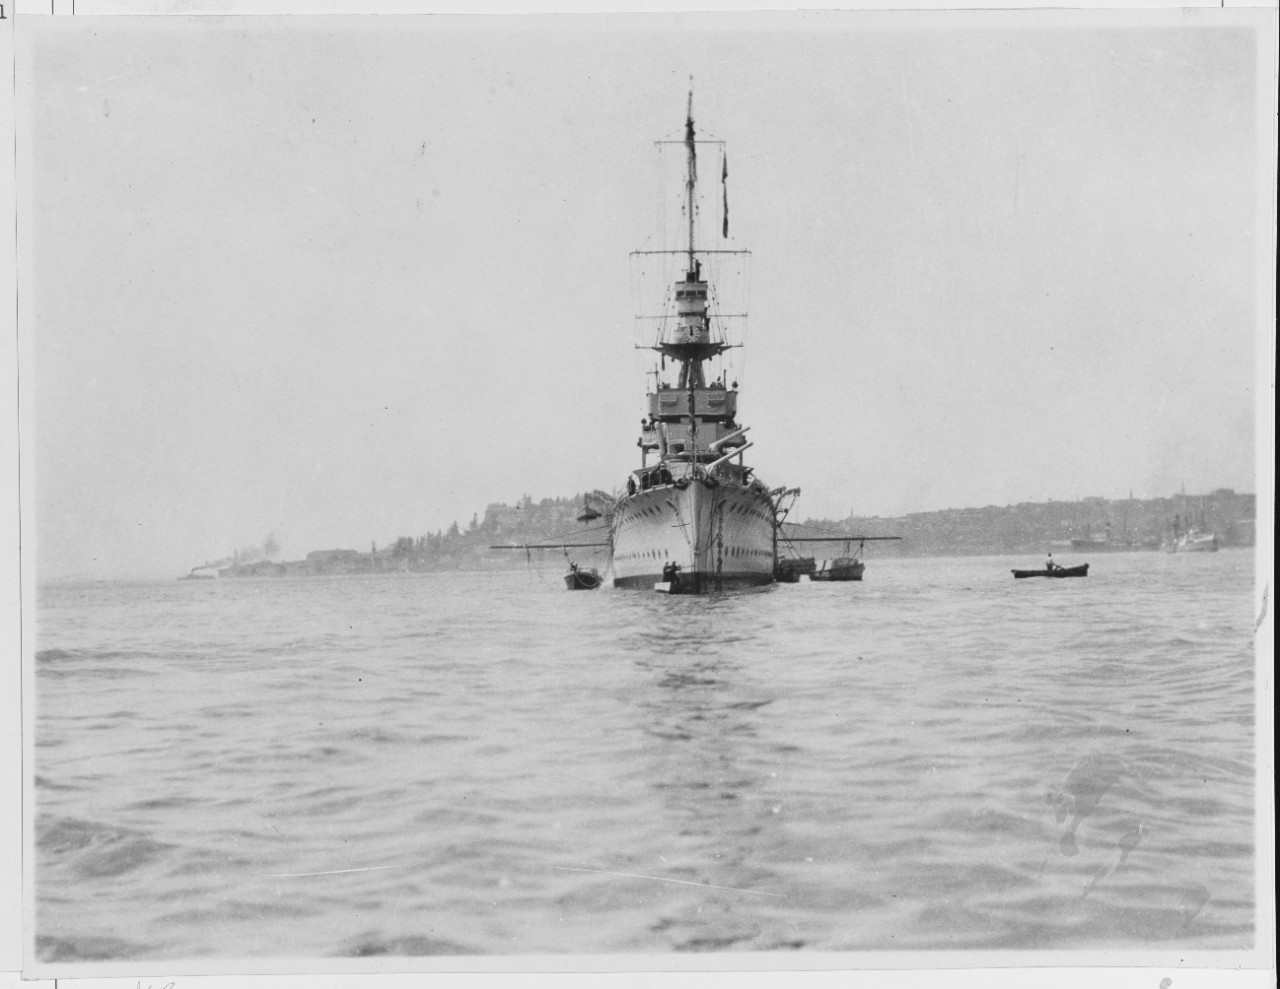 HMS CERES (British Cruiser, 1917)